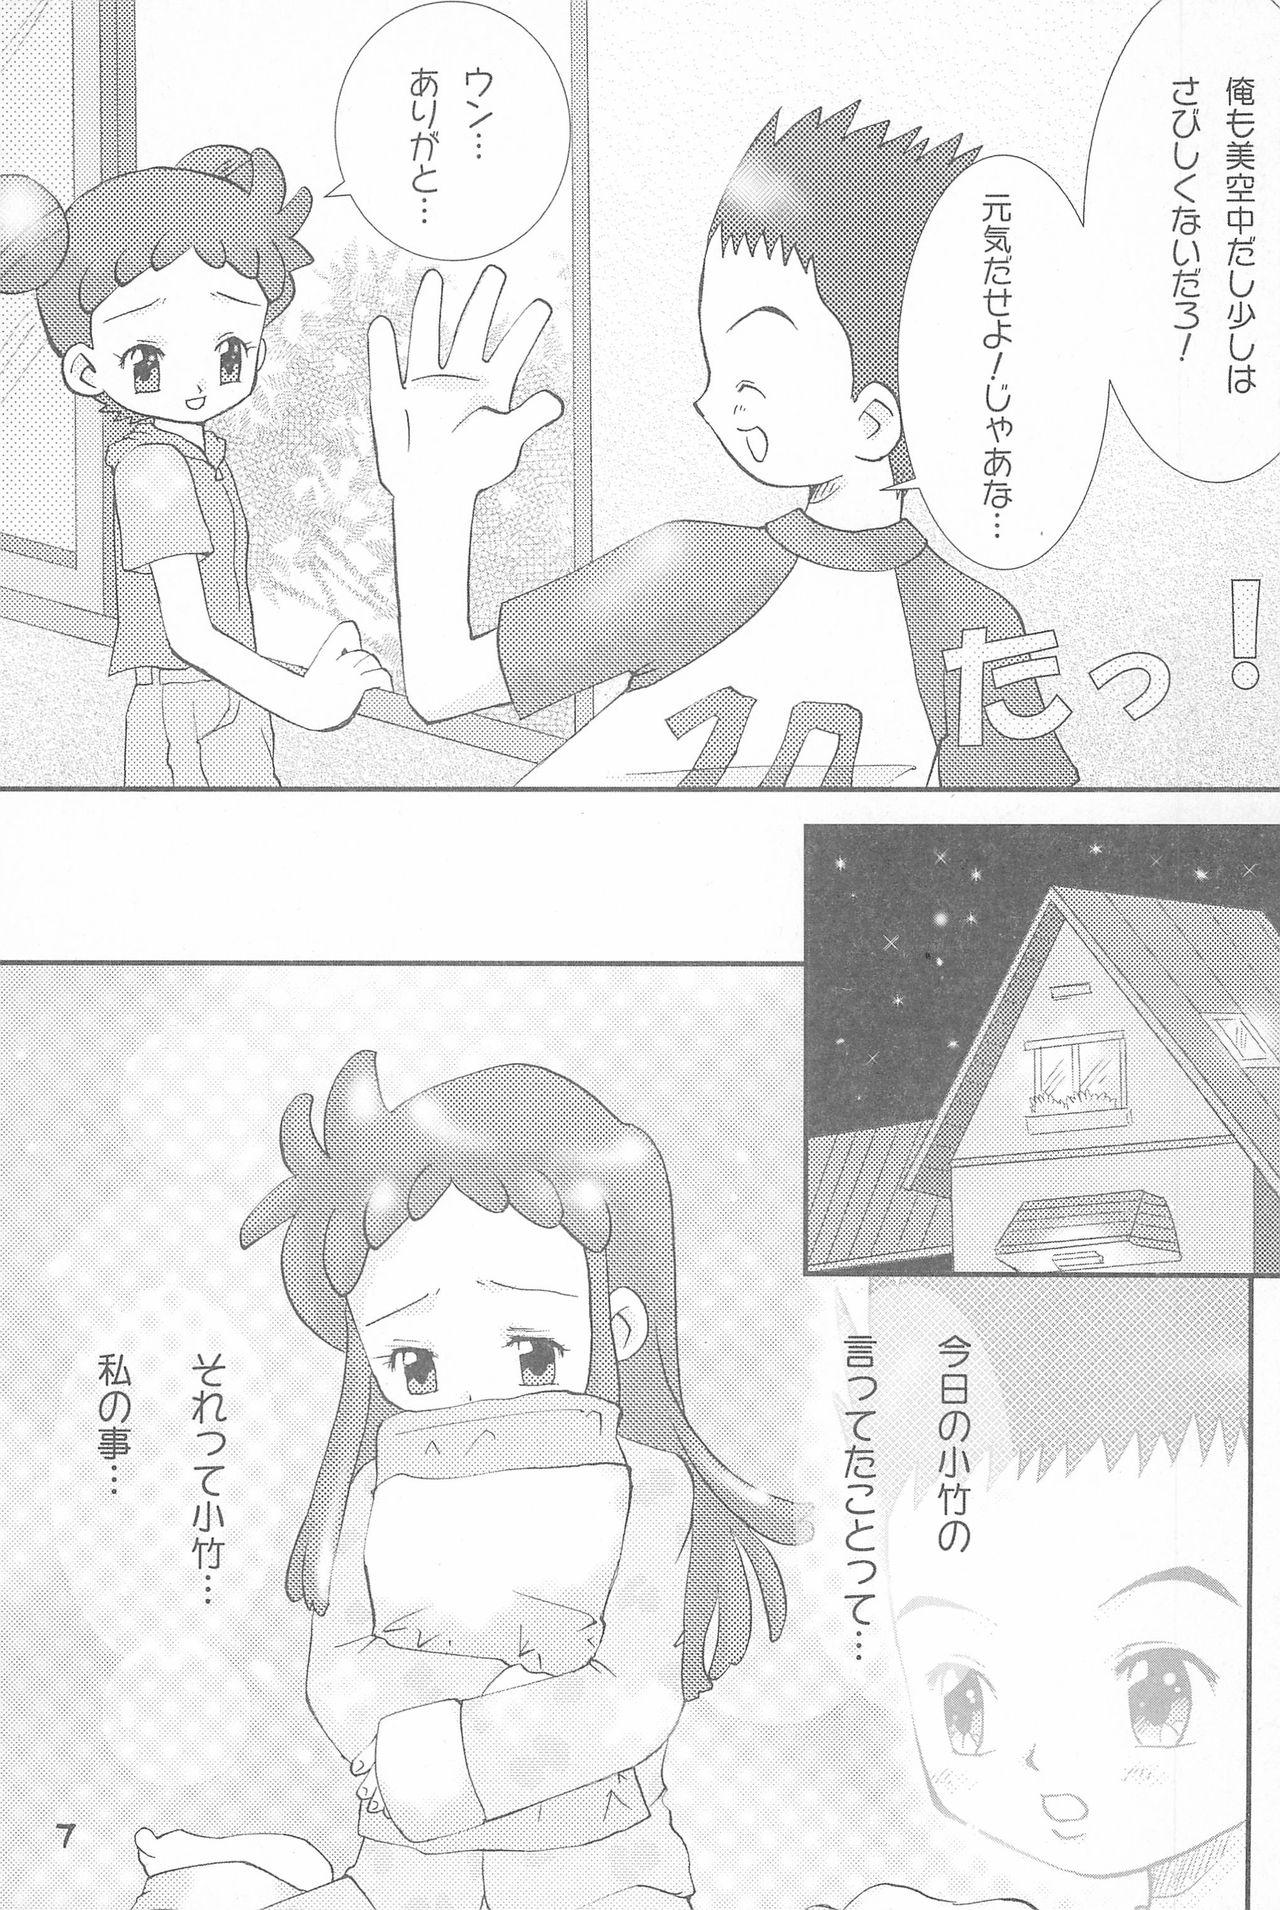 Chudai Shounen H - Ojamajo doremi Naija - Page 7